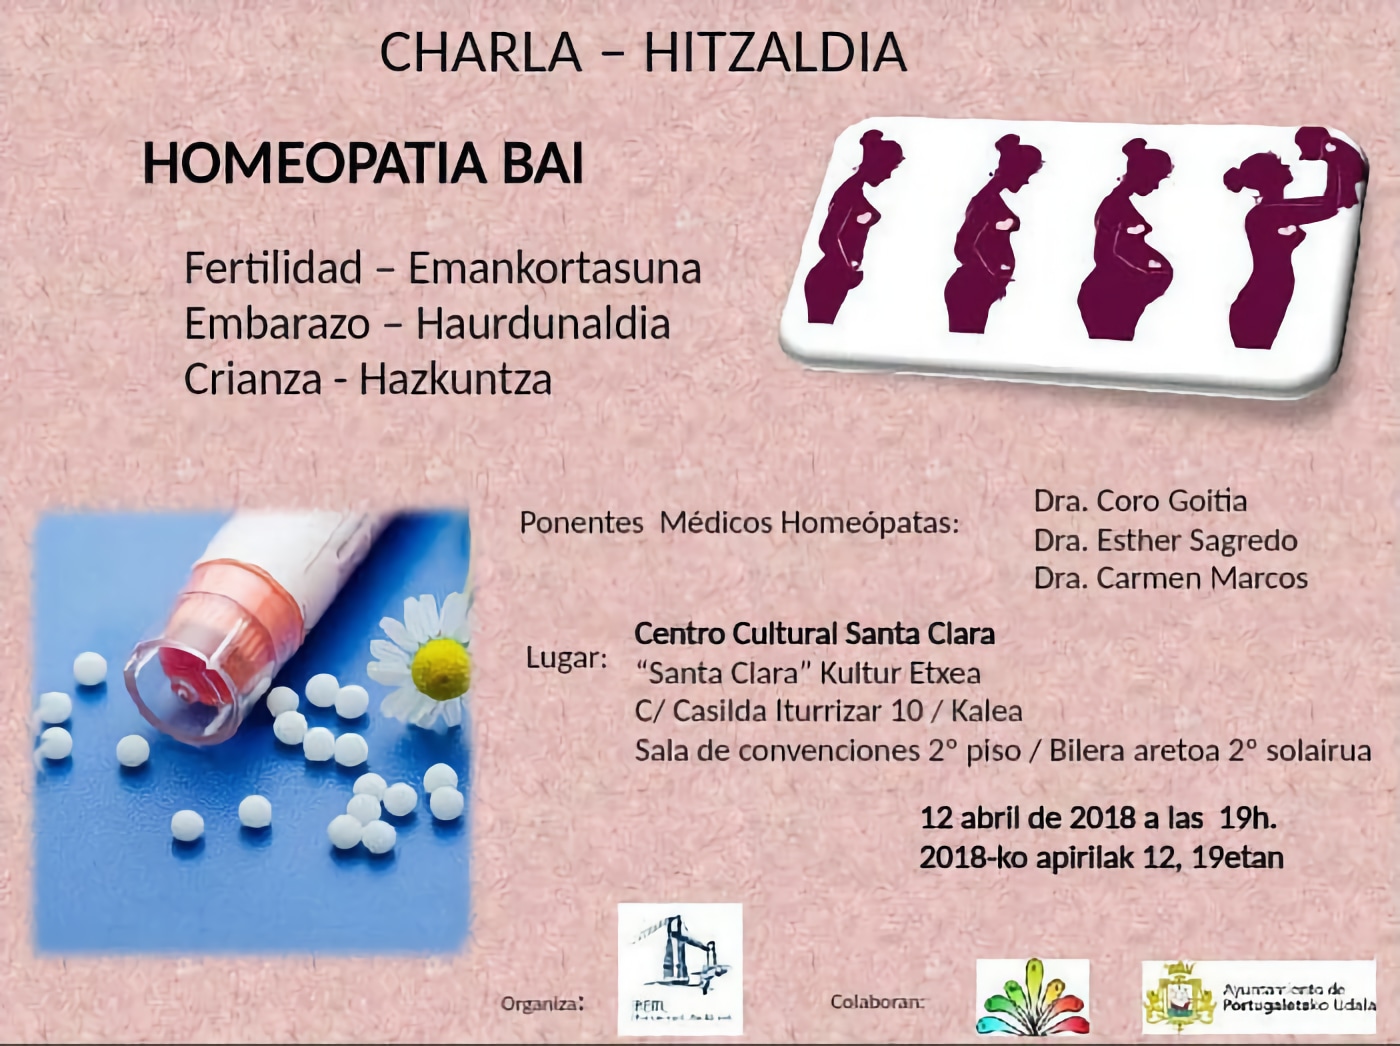 El Ayuntamiento de Portugalete promociona la homeopatía para el embarazo